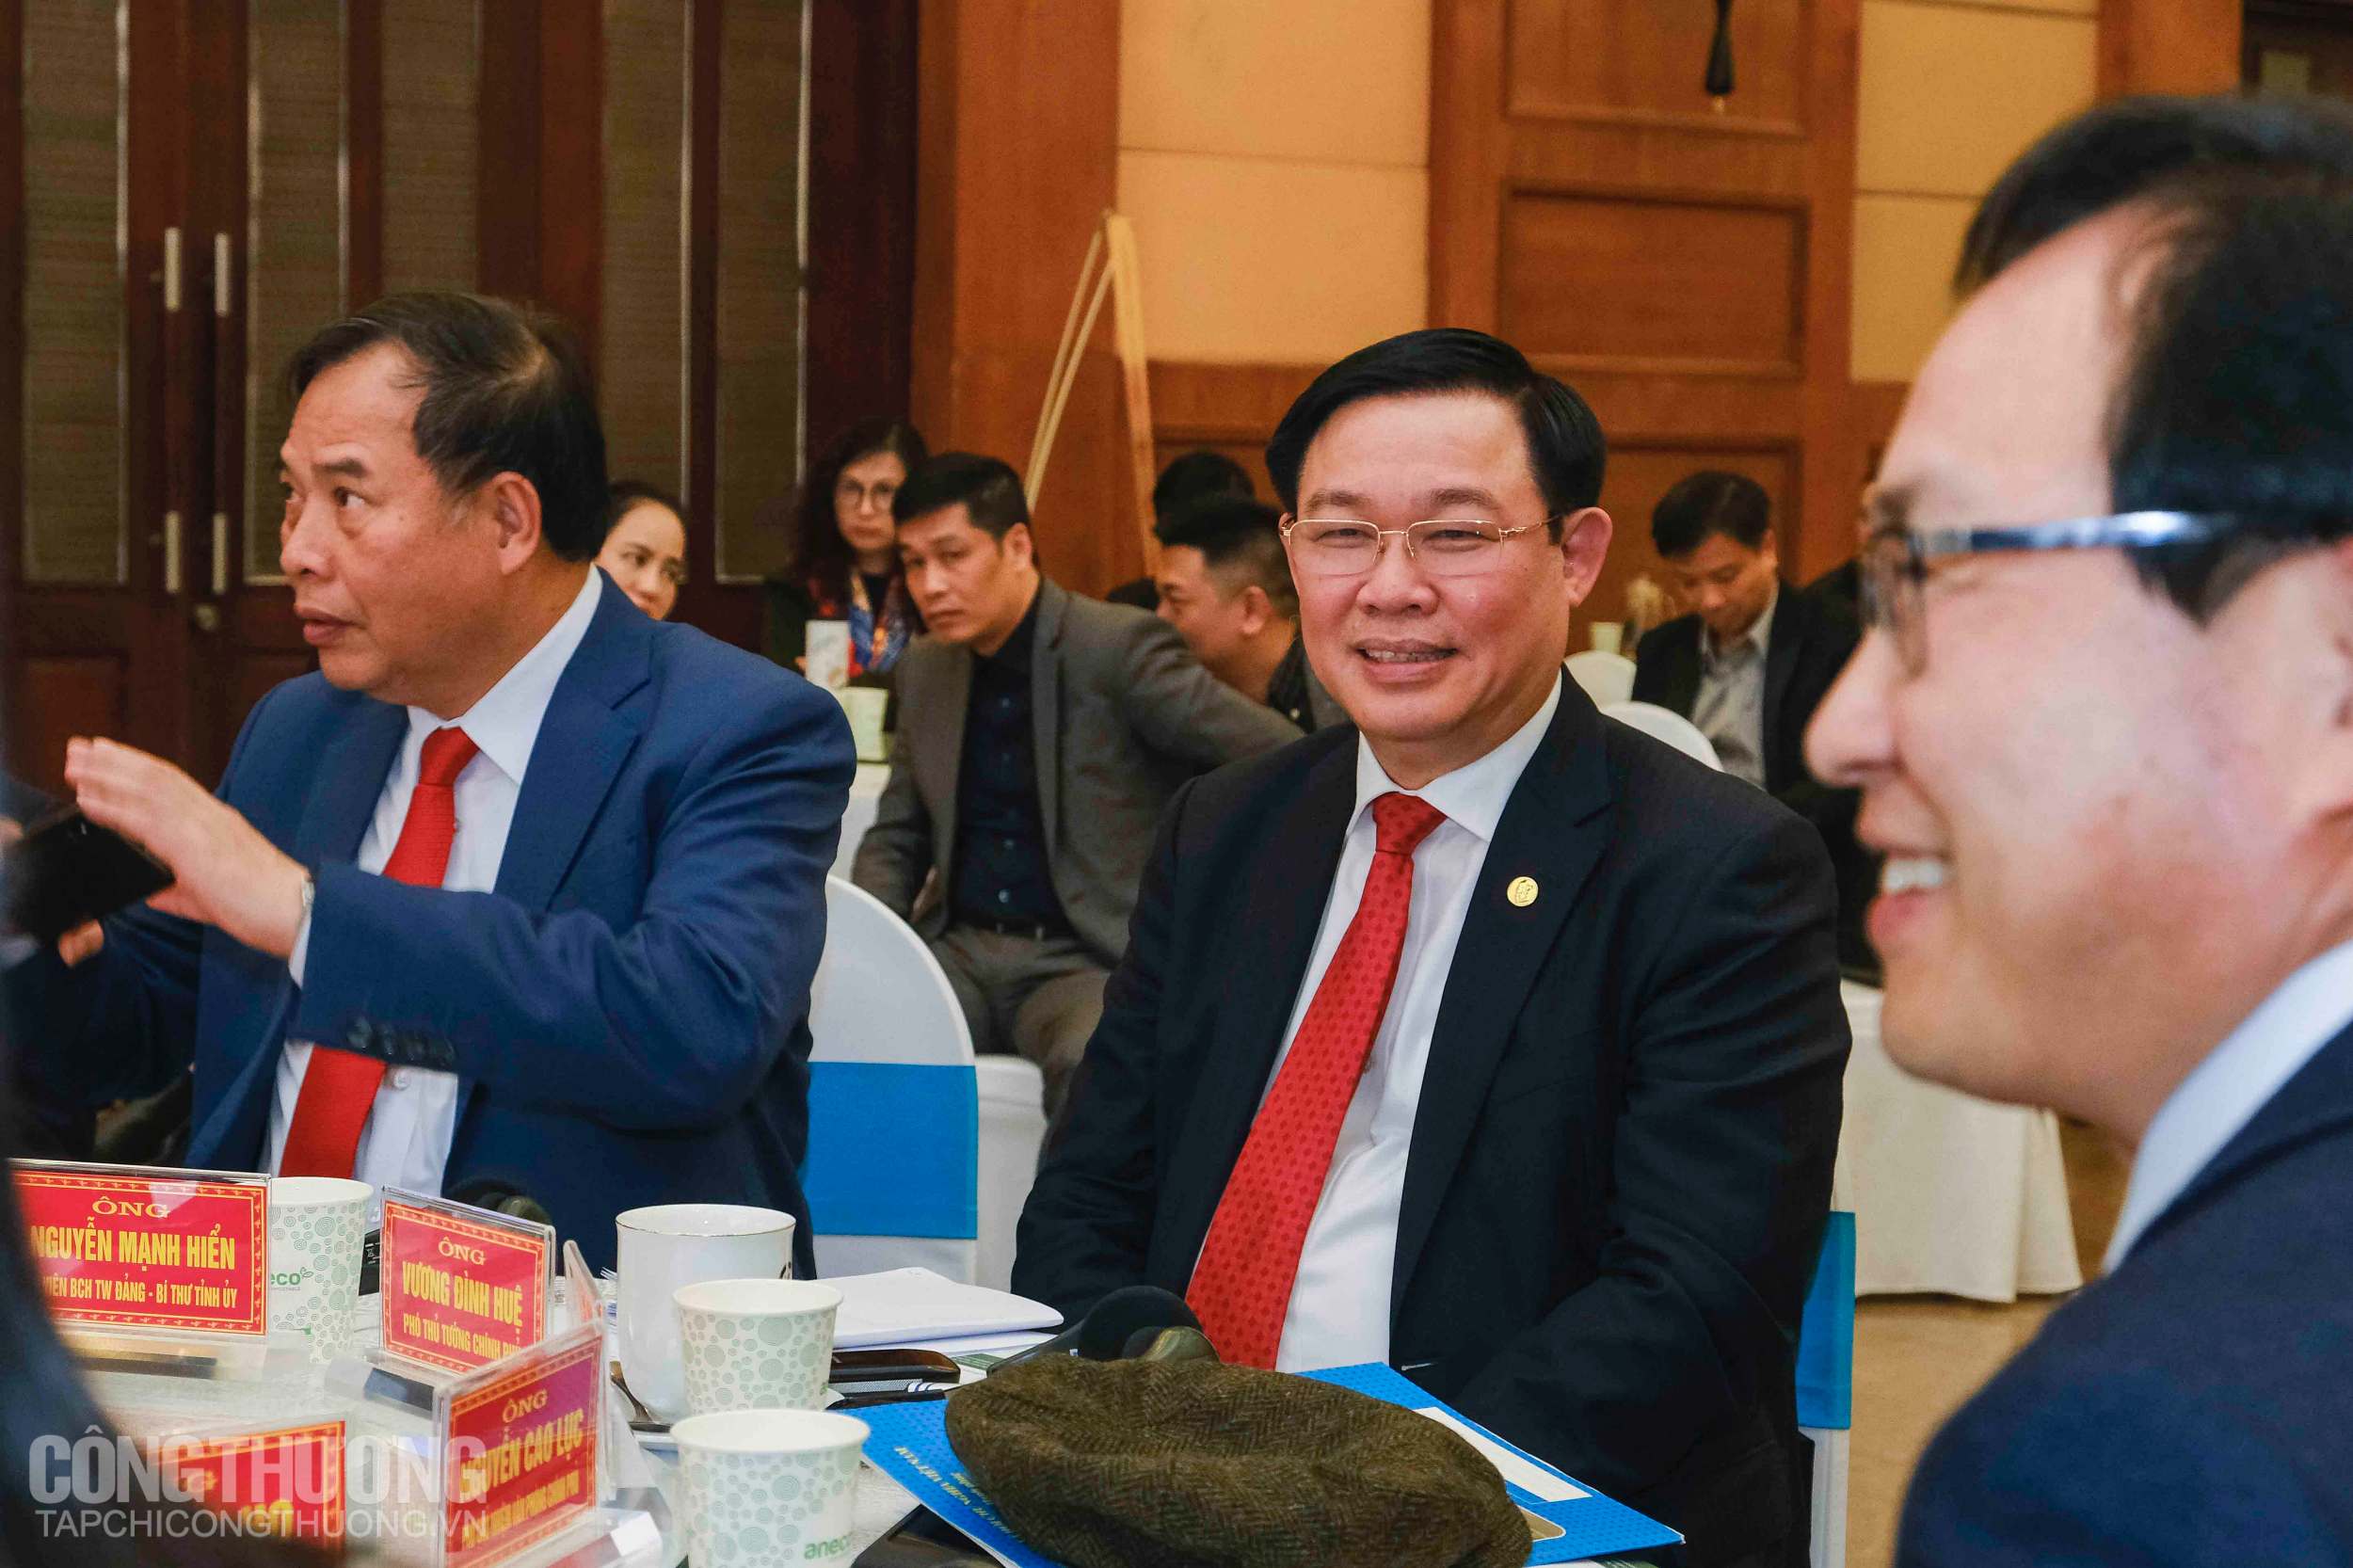 Phó Thủ tướng Vương Đình Huệ bày tỏ sự vui mừng trước sự chủ động tìm kiếm giải pháp phát triển của tỉnh Hải Dương cũng như Bộ Công Thương và sự hỗ trợ kịp thời của Samsung Việt Nam